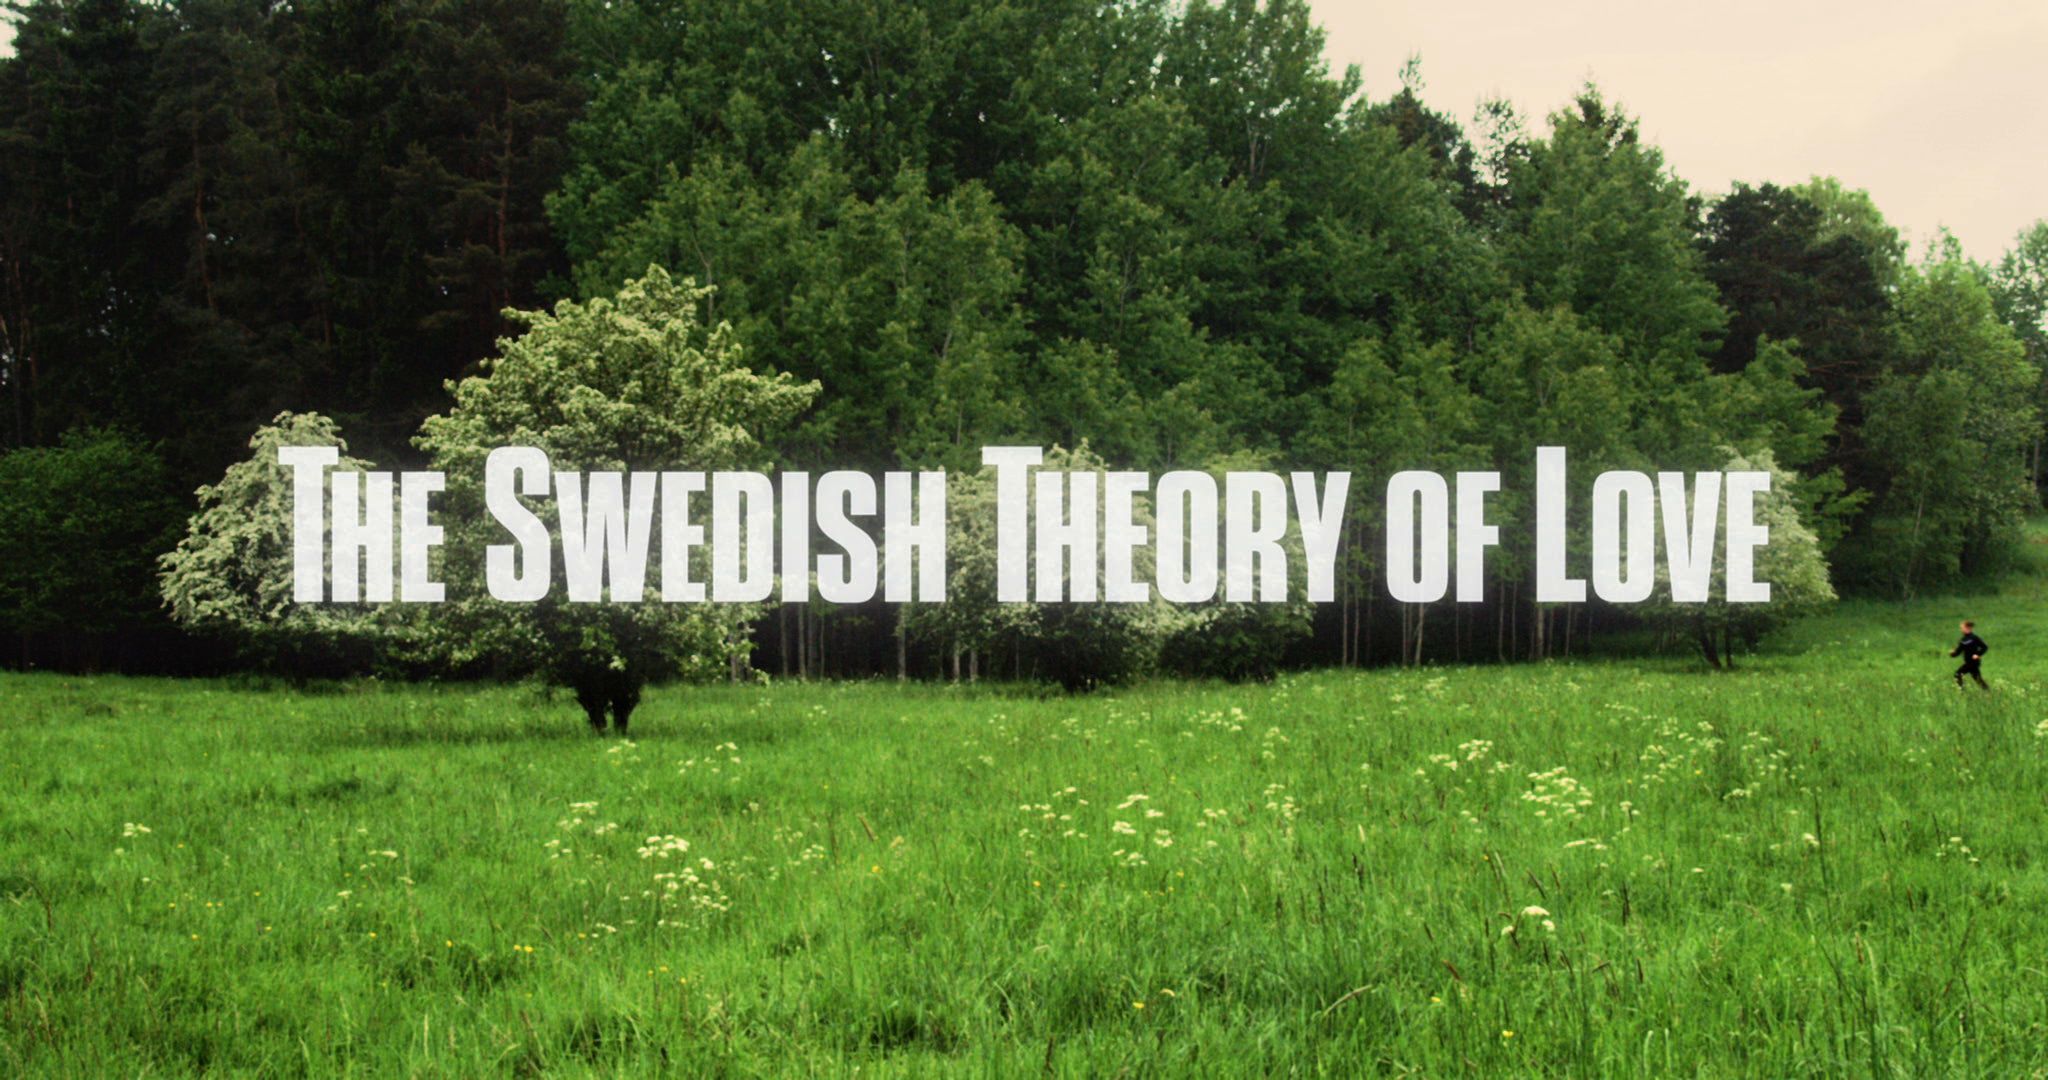 Švédská teorie lásky